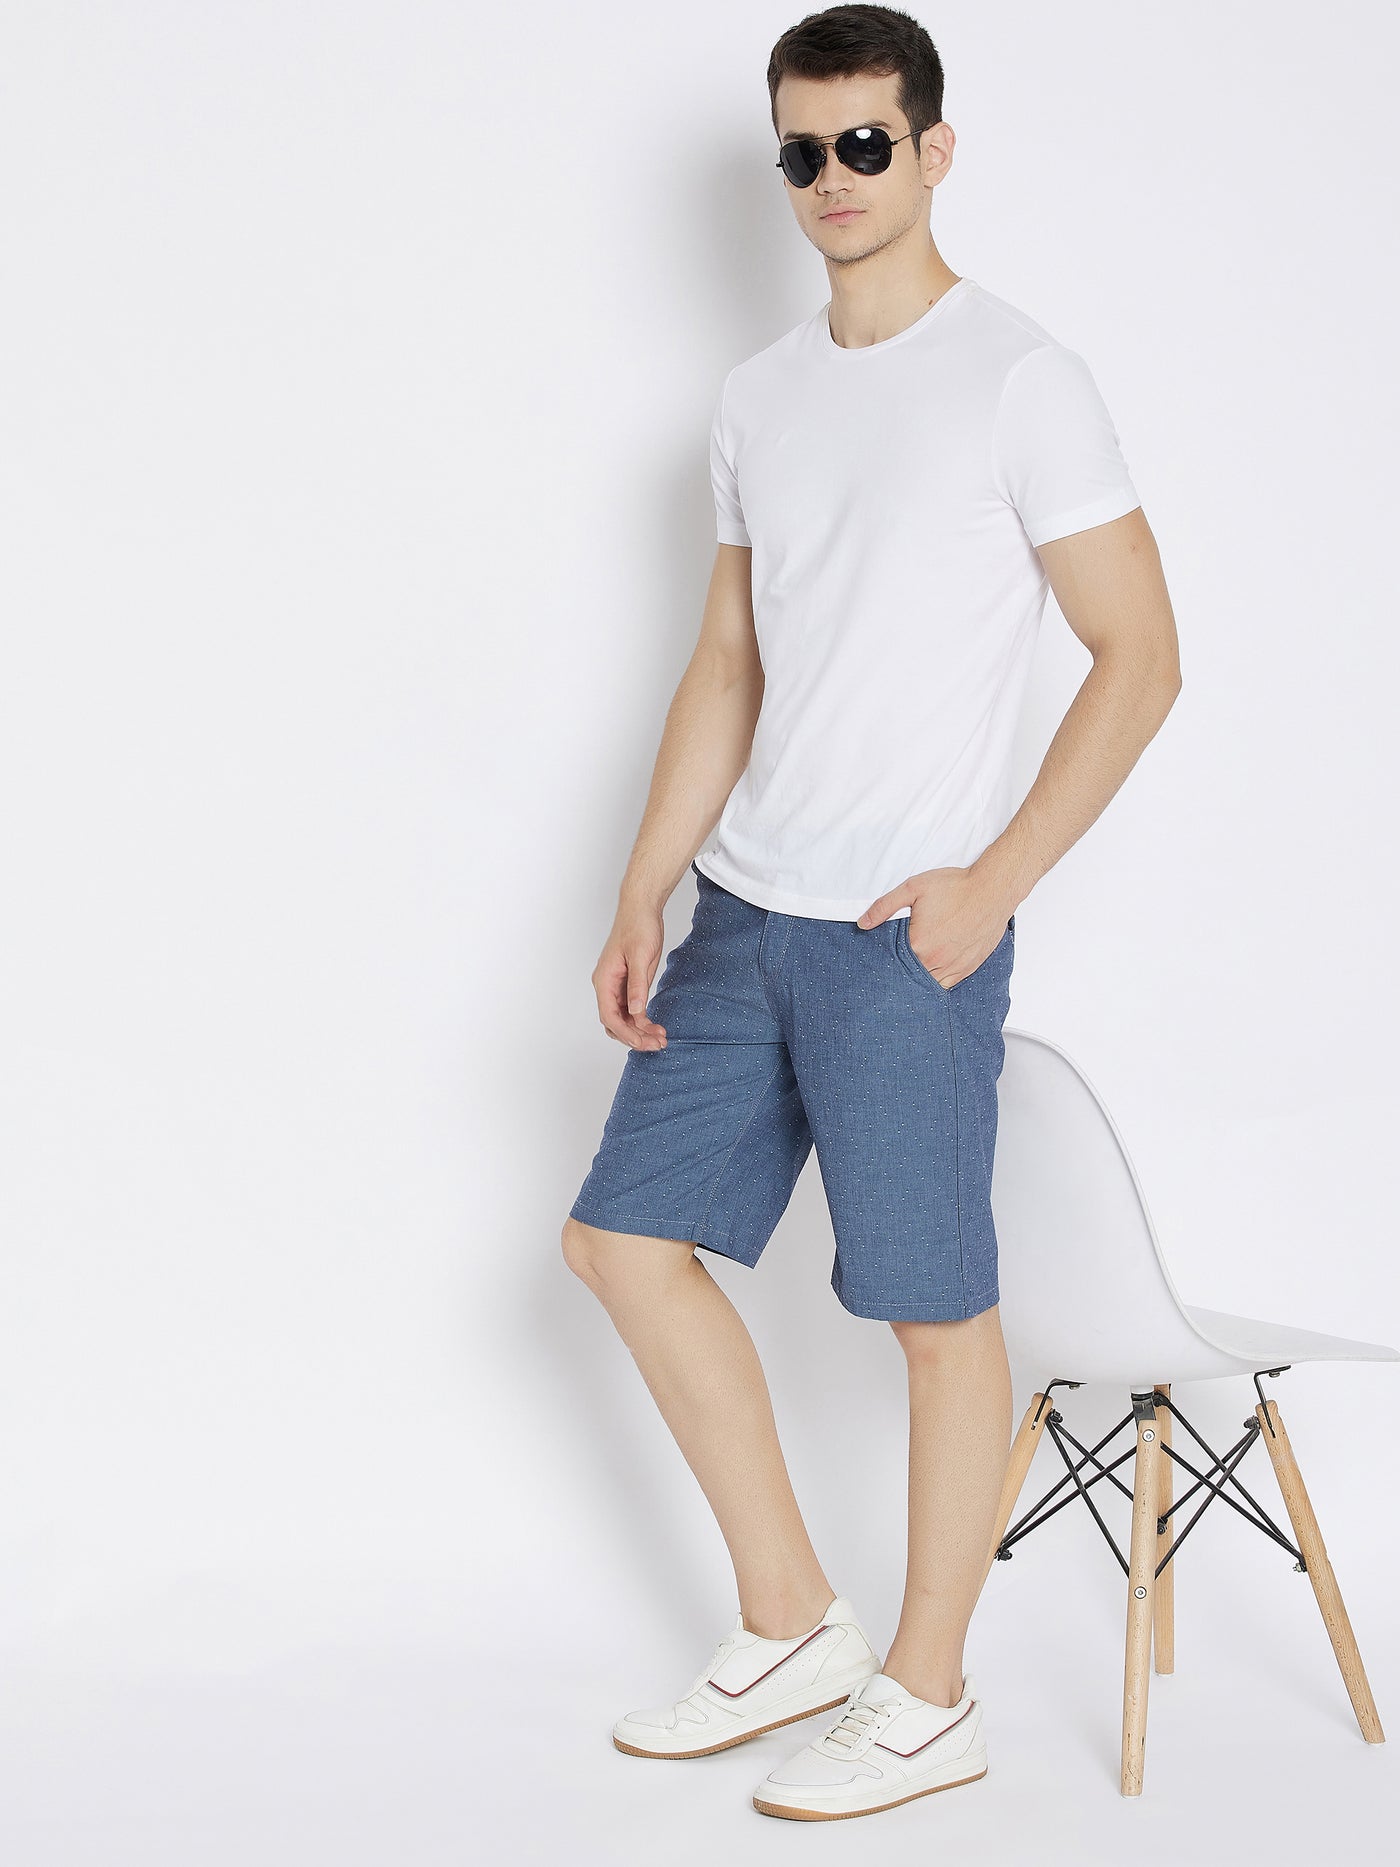 Grey Printed Slim Fit Shorts - Men Shorts